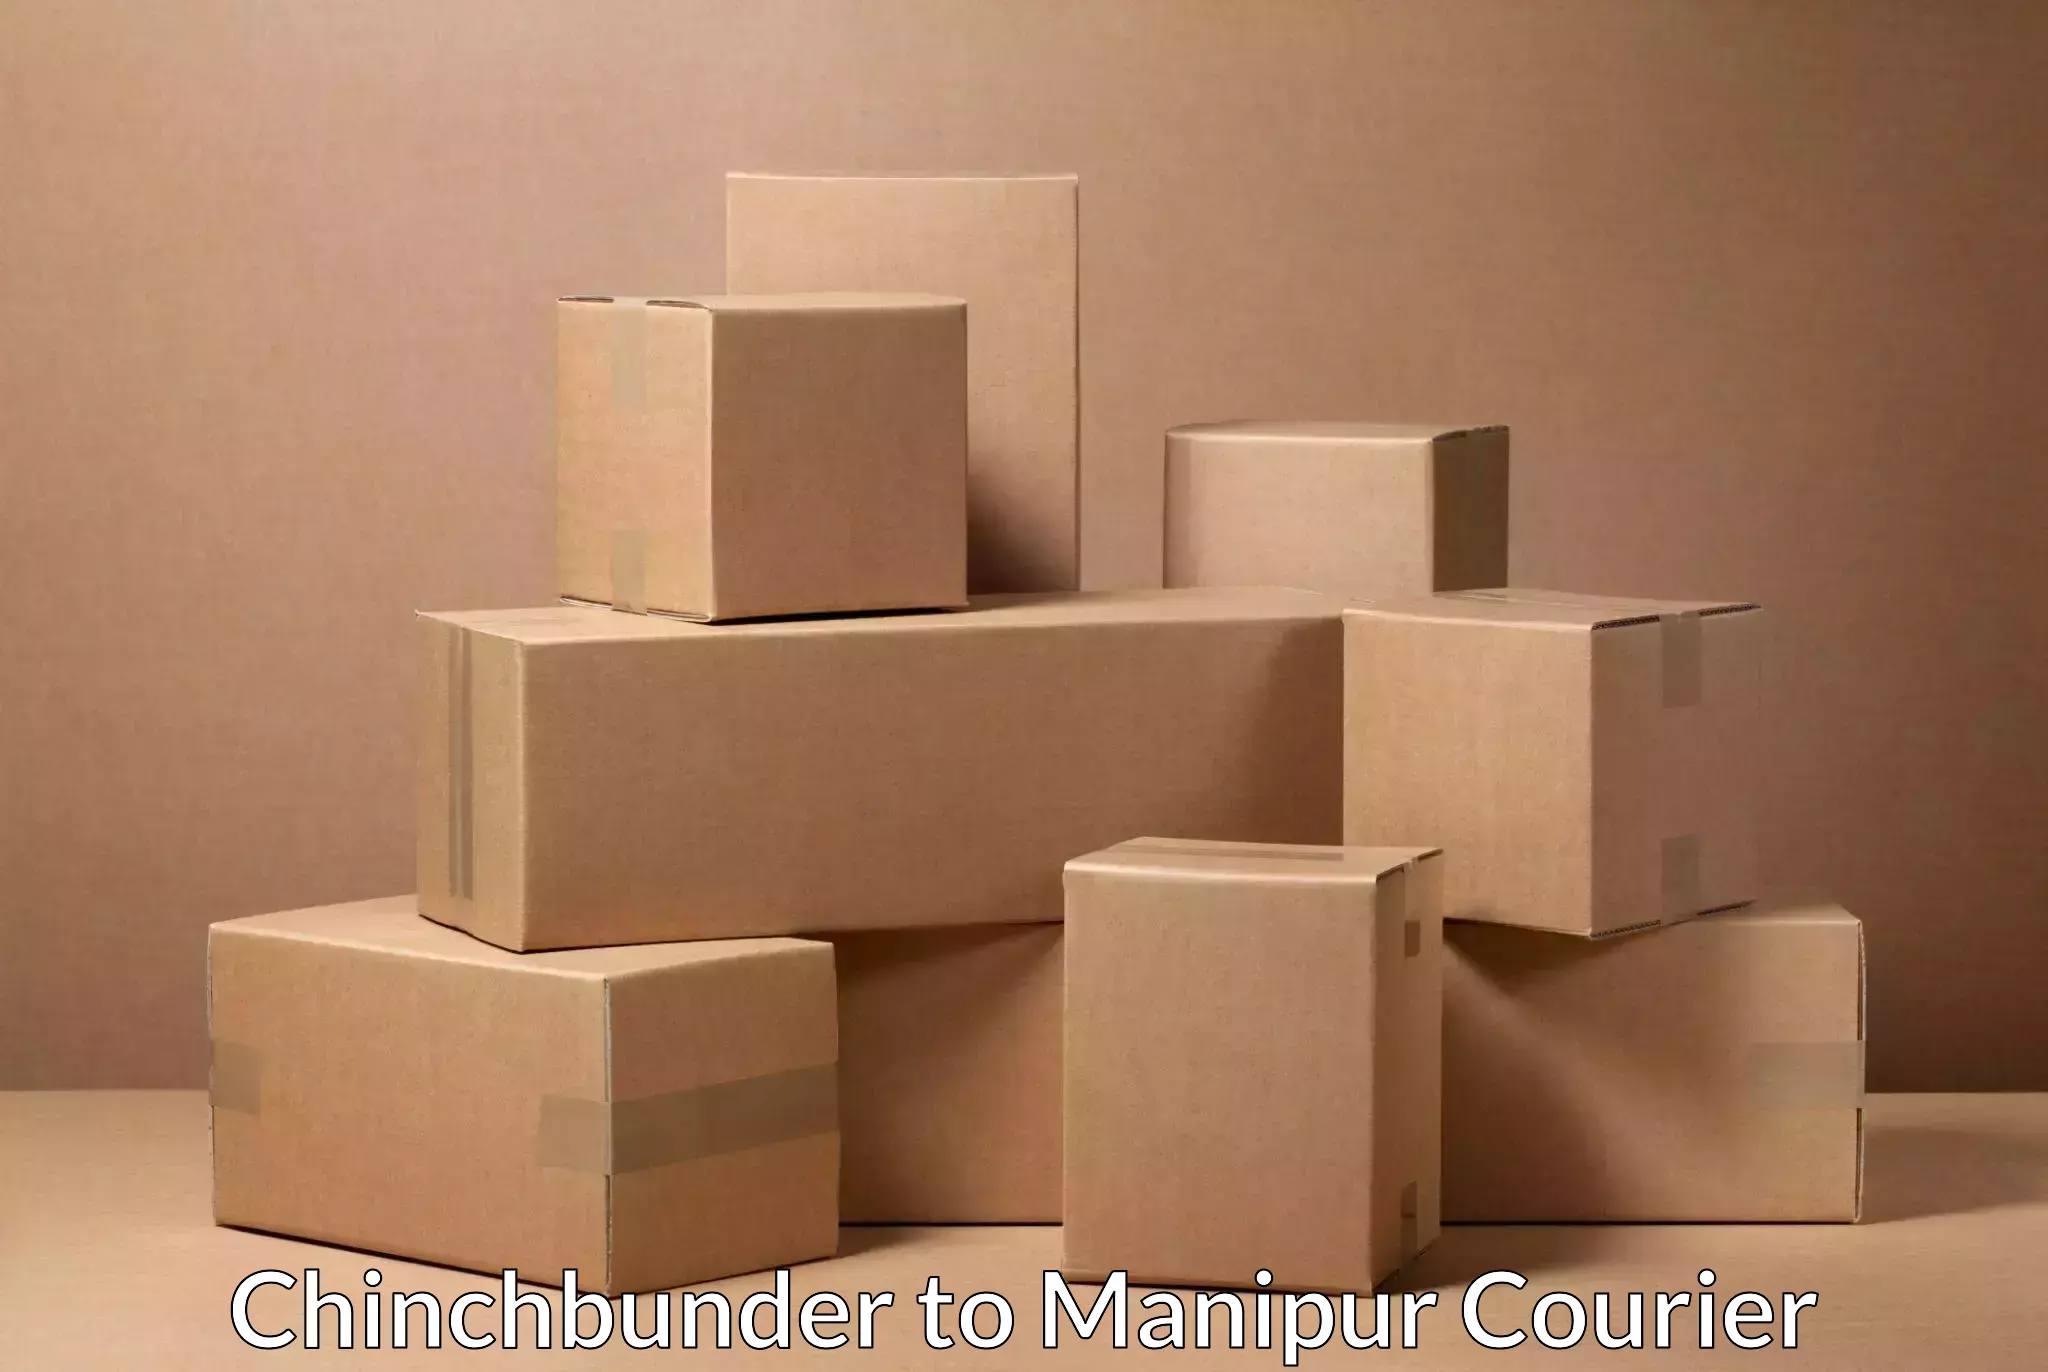 Digital courier platforms Chinchbunder to Manipur